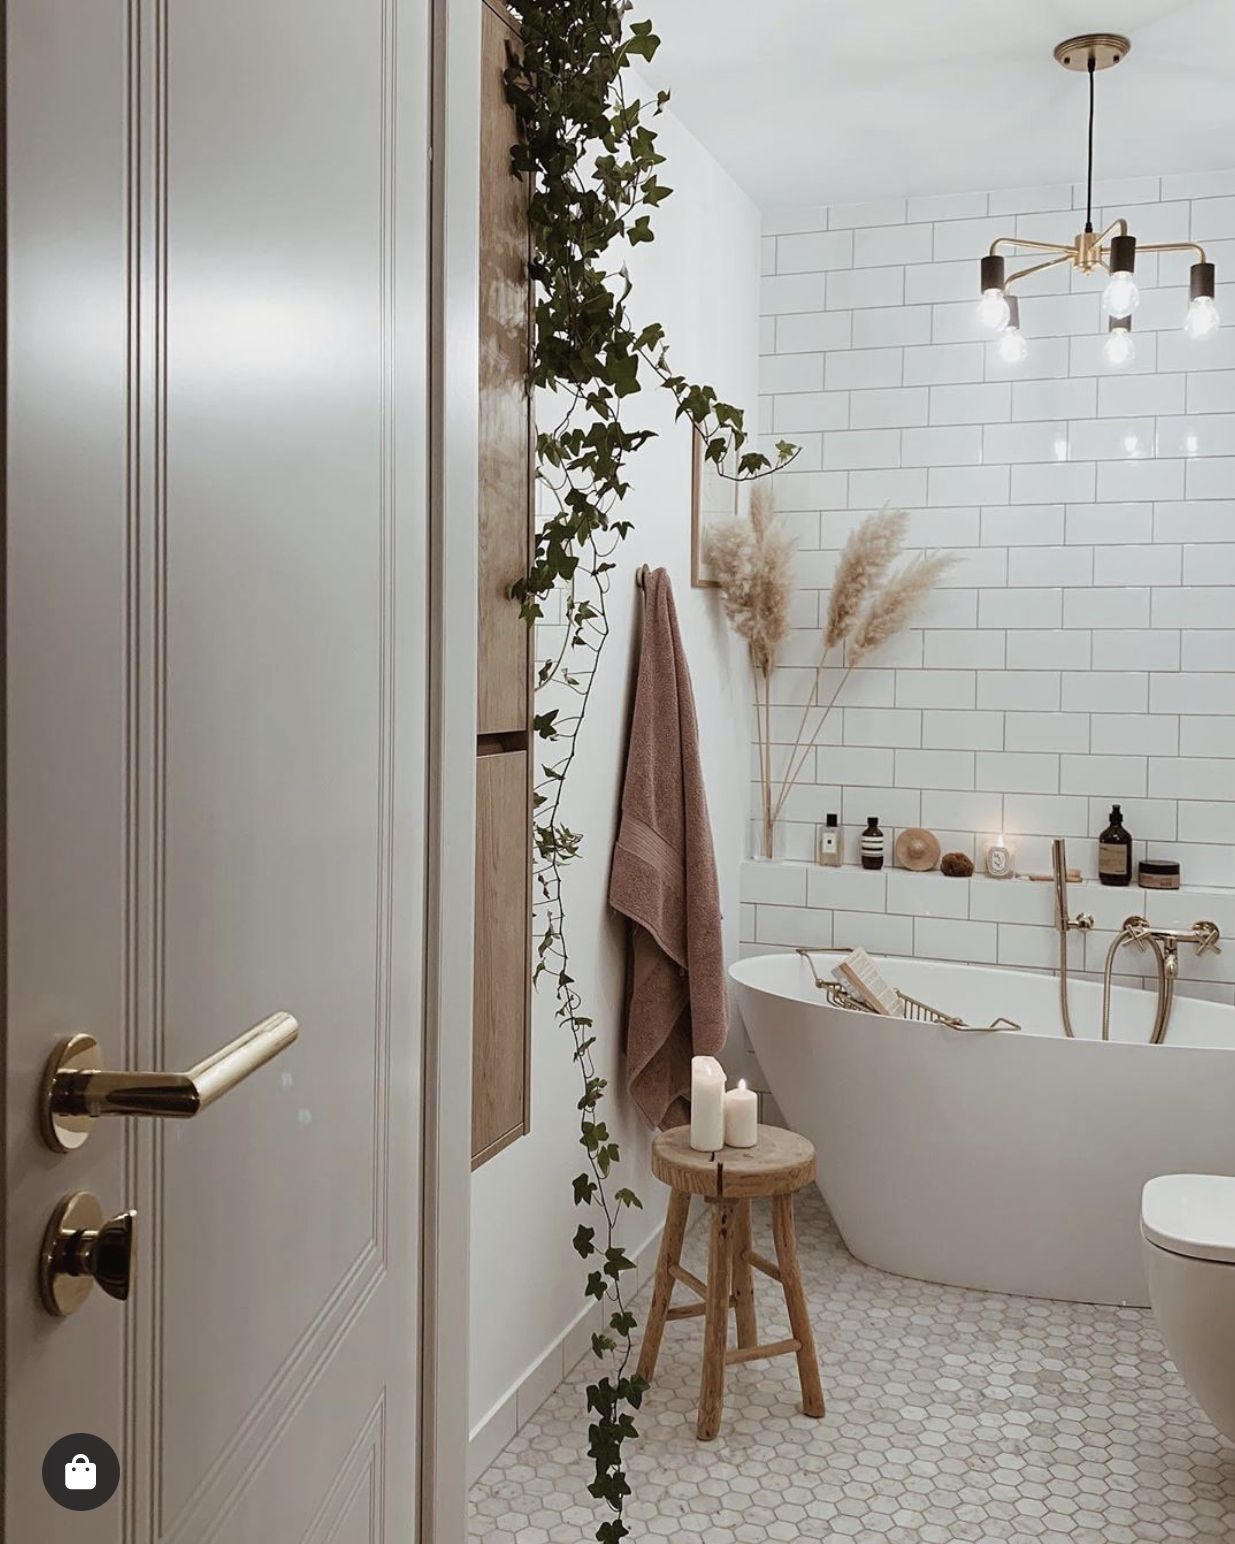 Phòng tắm thiết kế theo phong cách Boho phóng khoáng với gạch penny lục giác lát sàn, ghế đẩu bằng gỗ giản dị và cỏ pampas cắm trong bình xinh xắn.